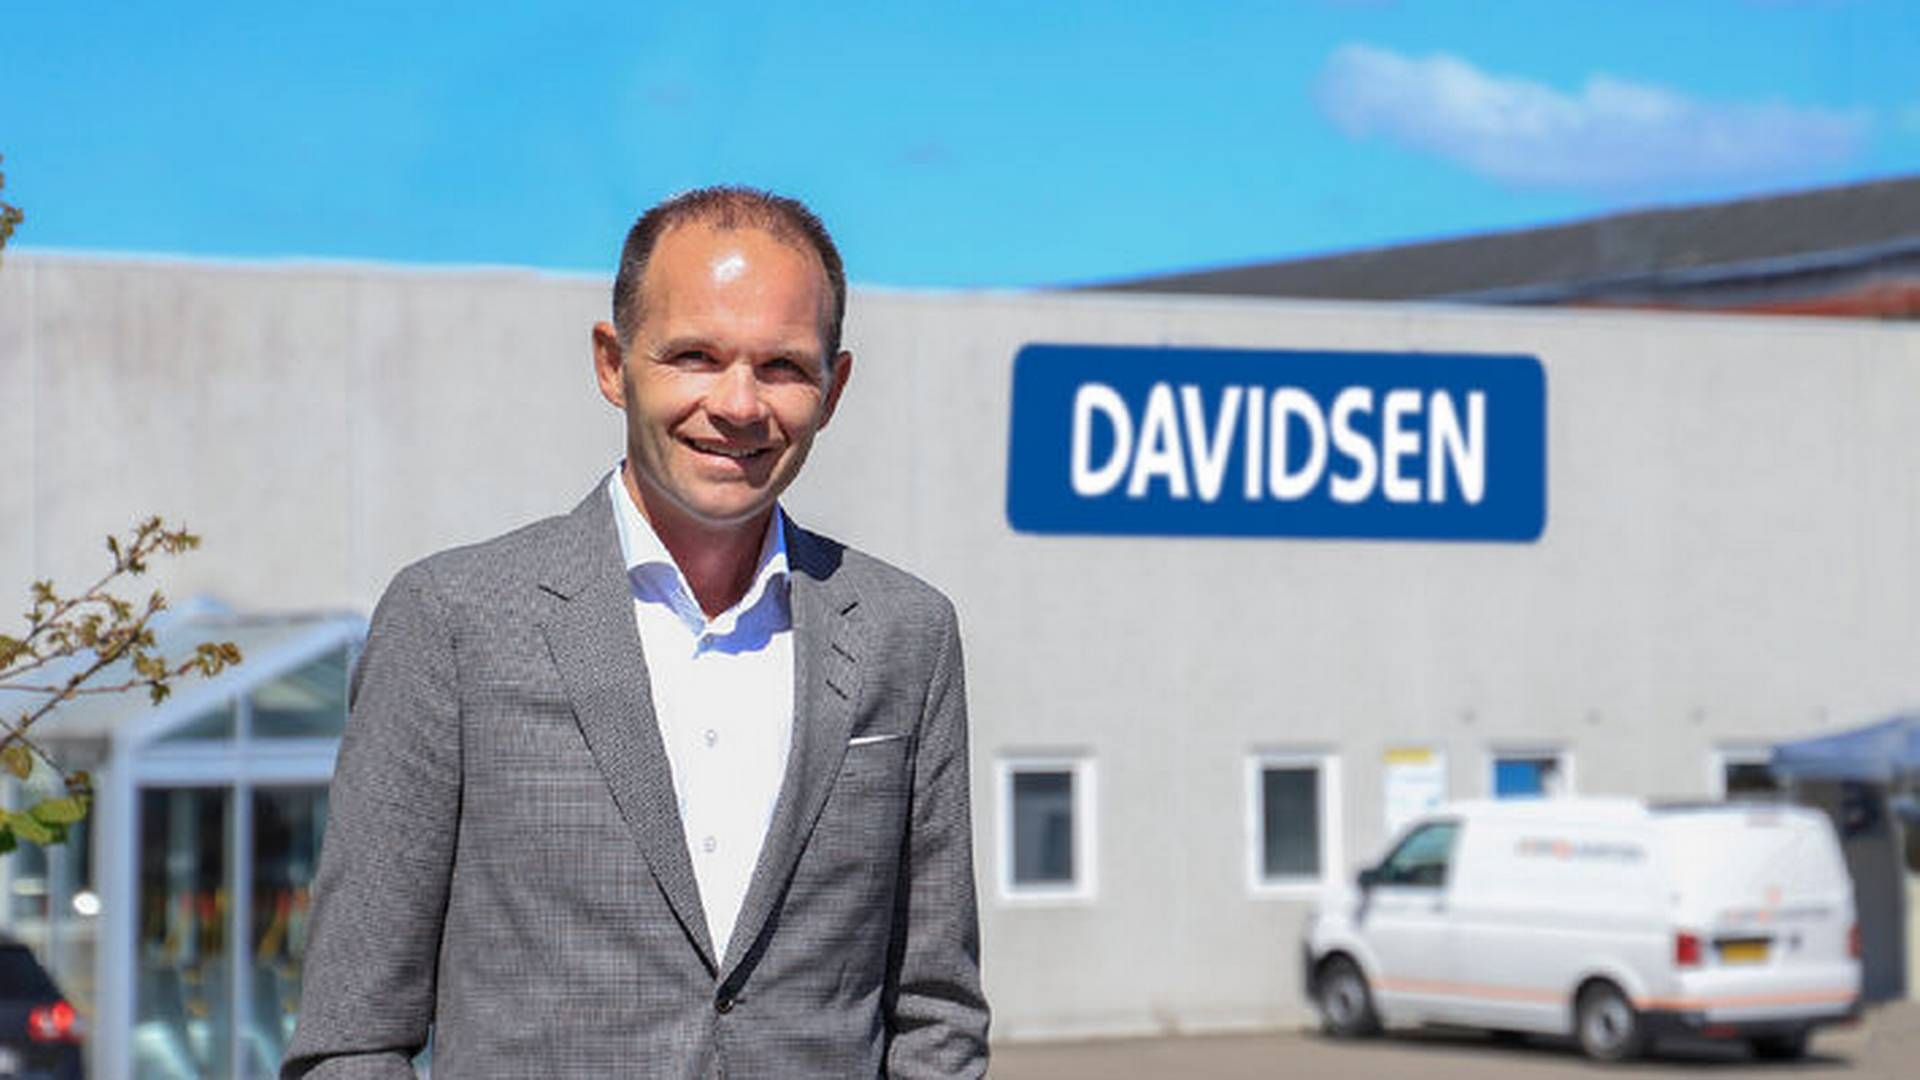 Henrik Clausen har siden 2018 stået i spidsen som adm. direktør for den sønderjyske familiekoncern. | Foto: Davidsen Tømmerhandel/pr